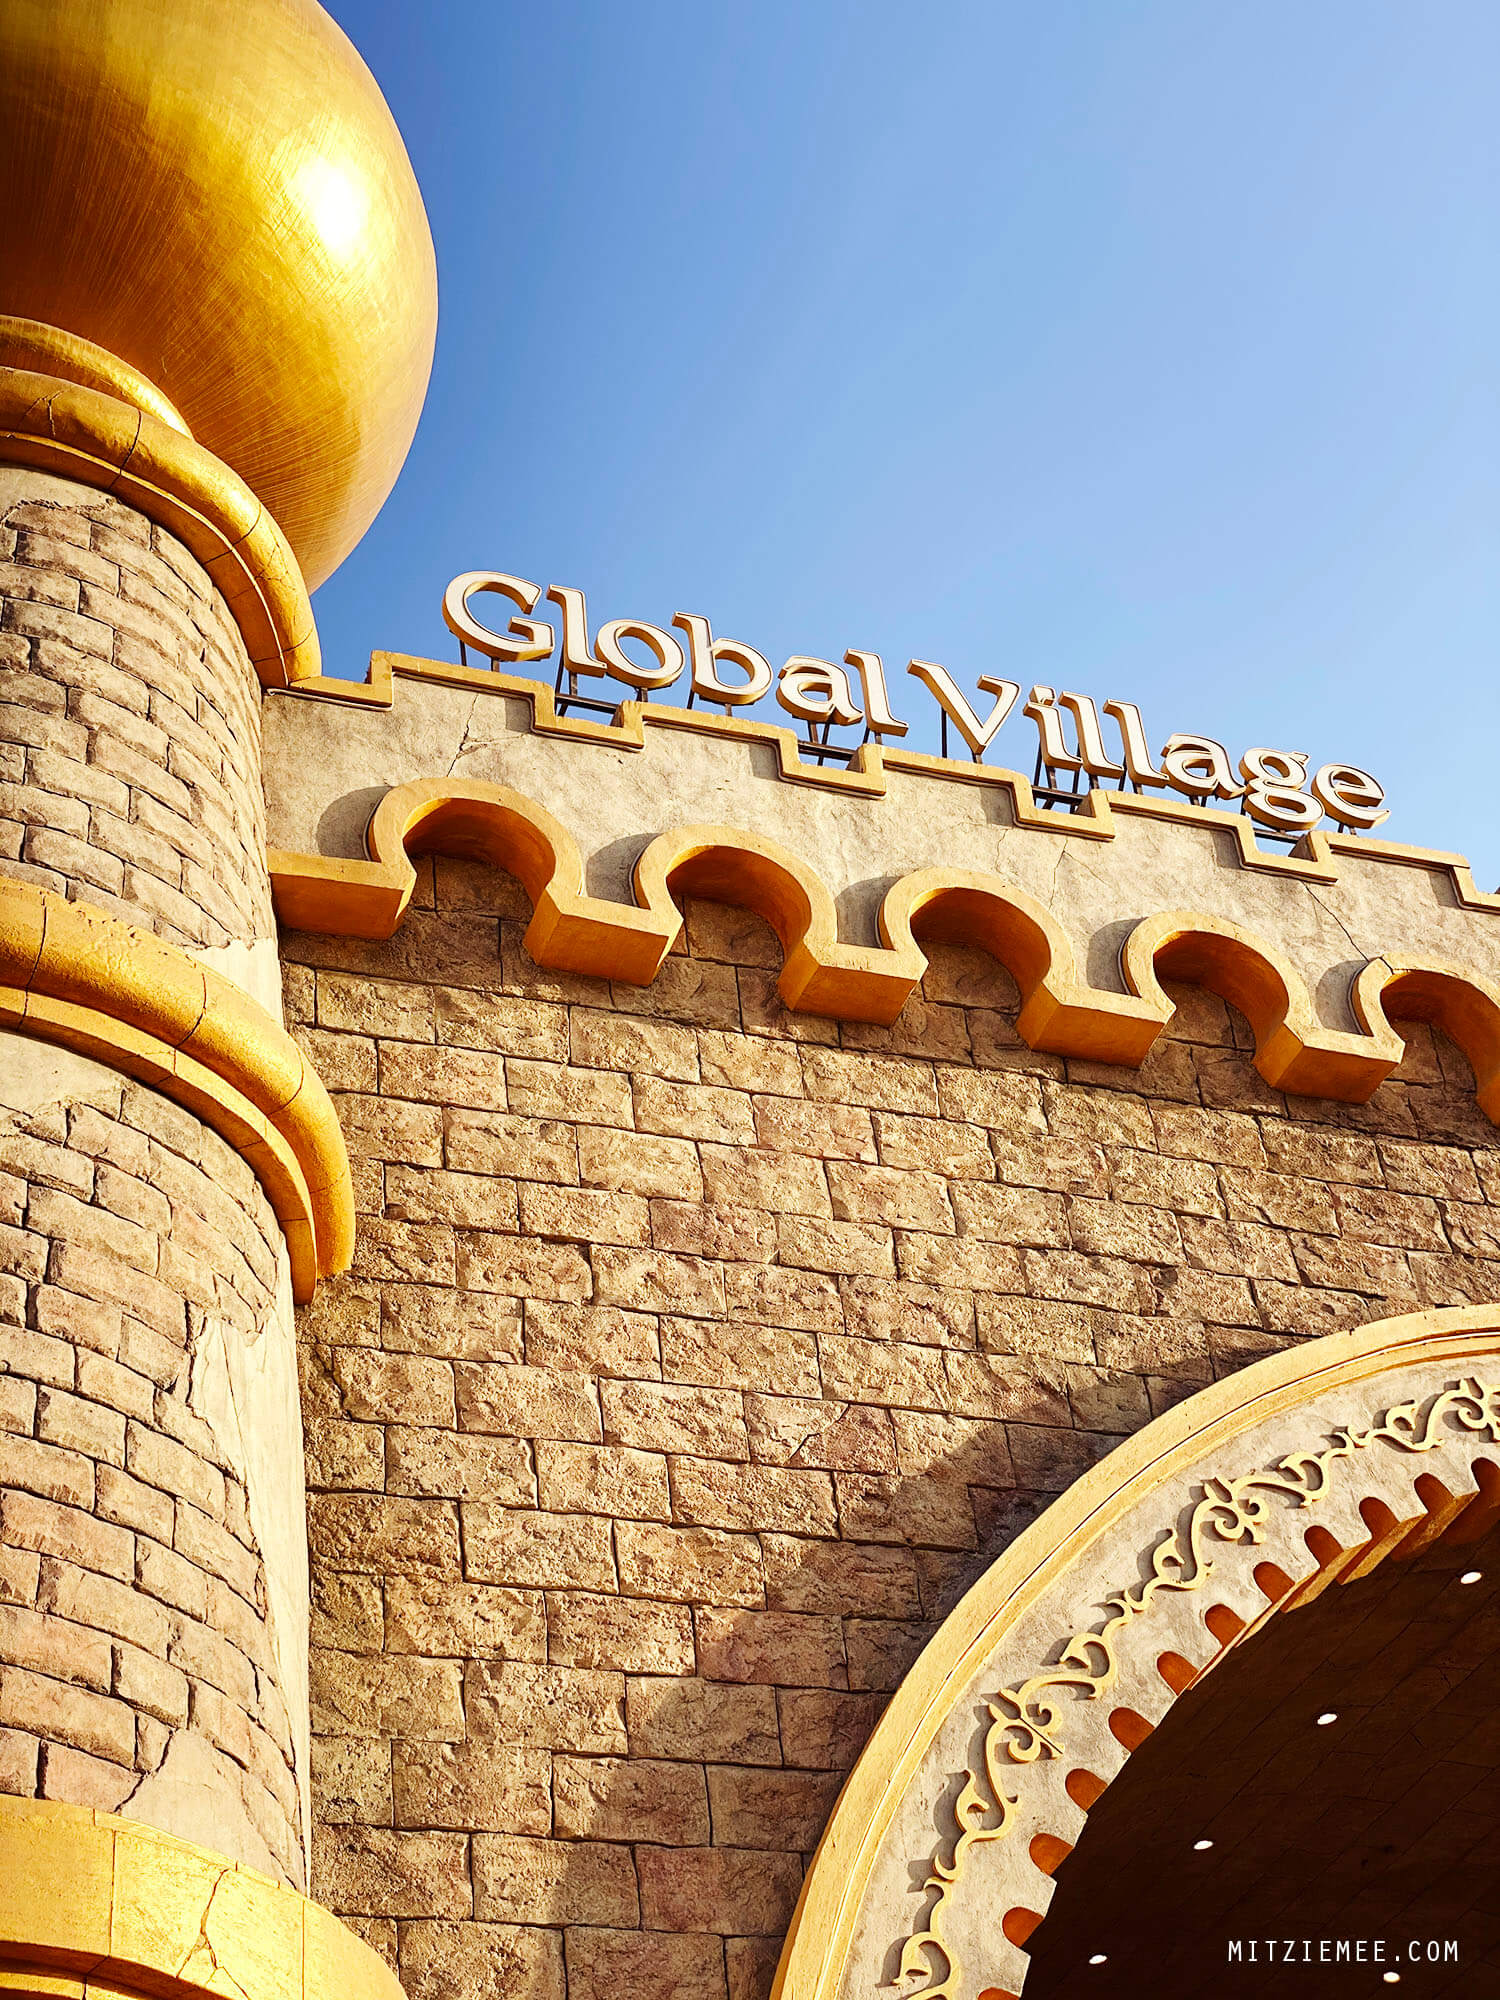 The Culture Gate, Global Village in Dubai